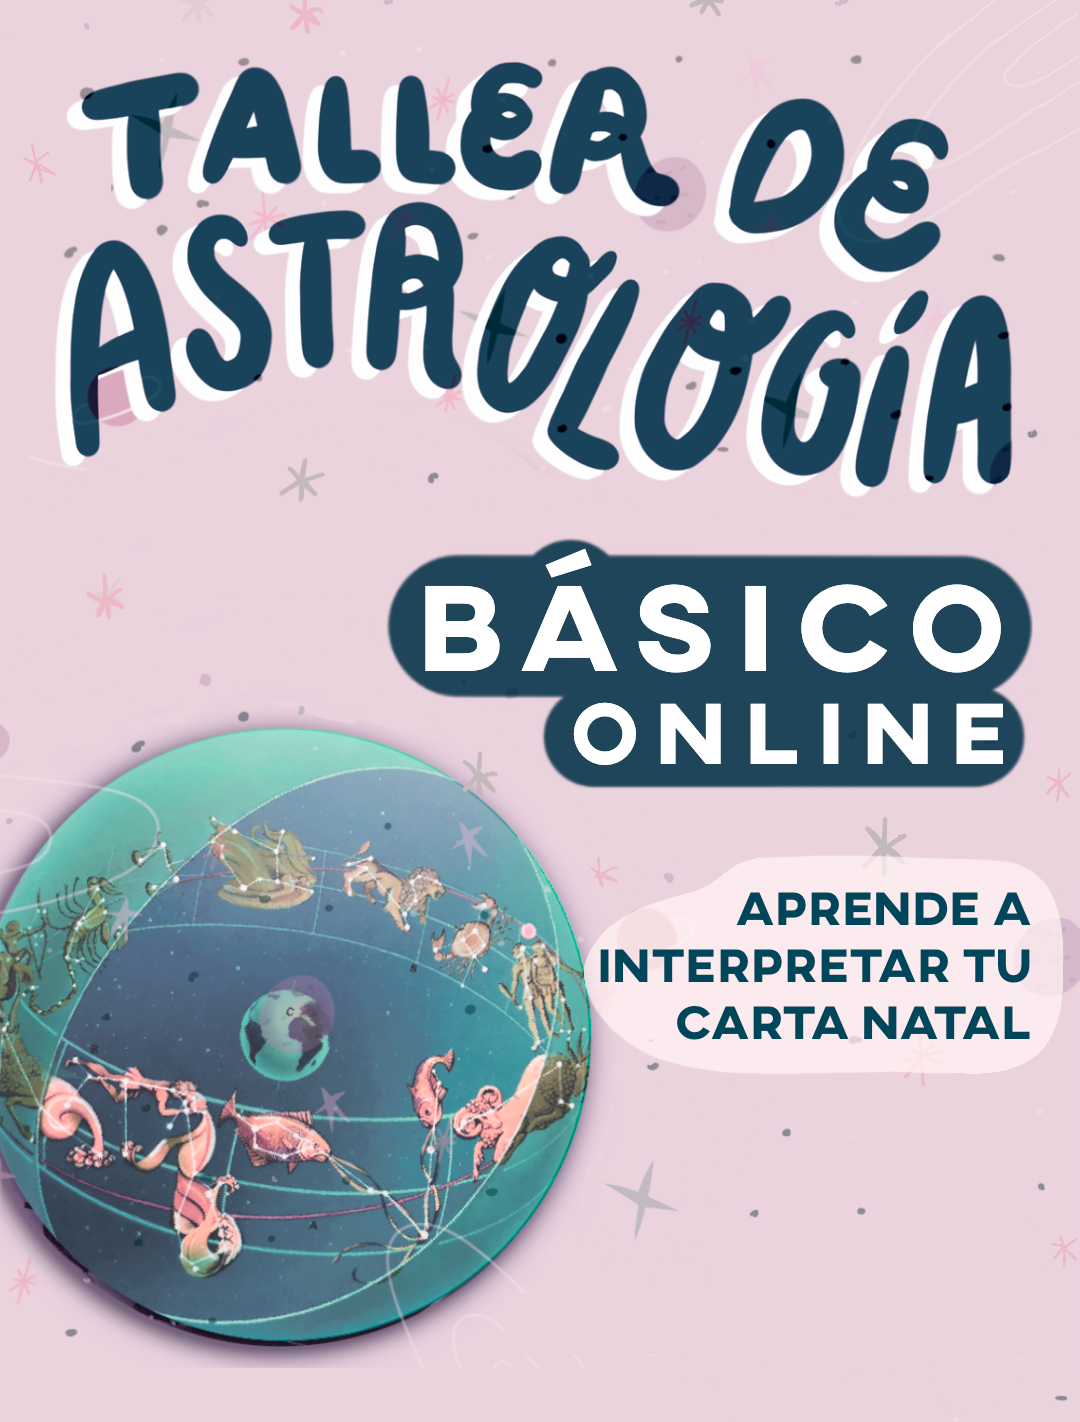 TALLER DE ASTROLOGÍA BÁSICO ONLINE - $180 DÓLARES